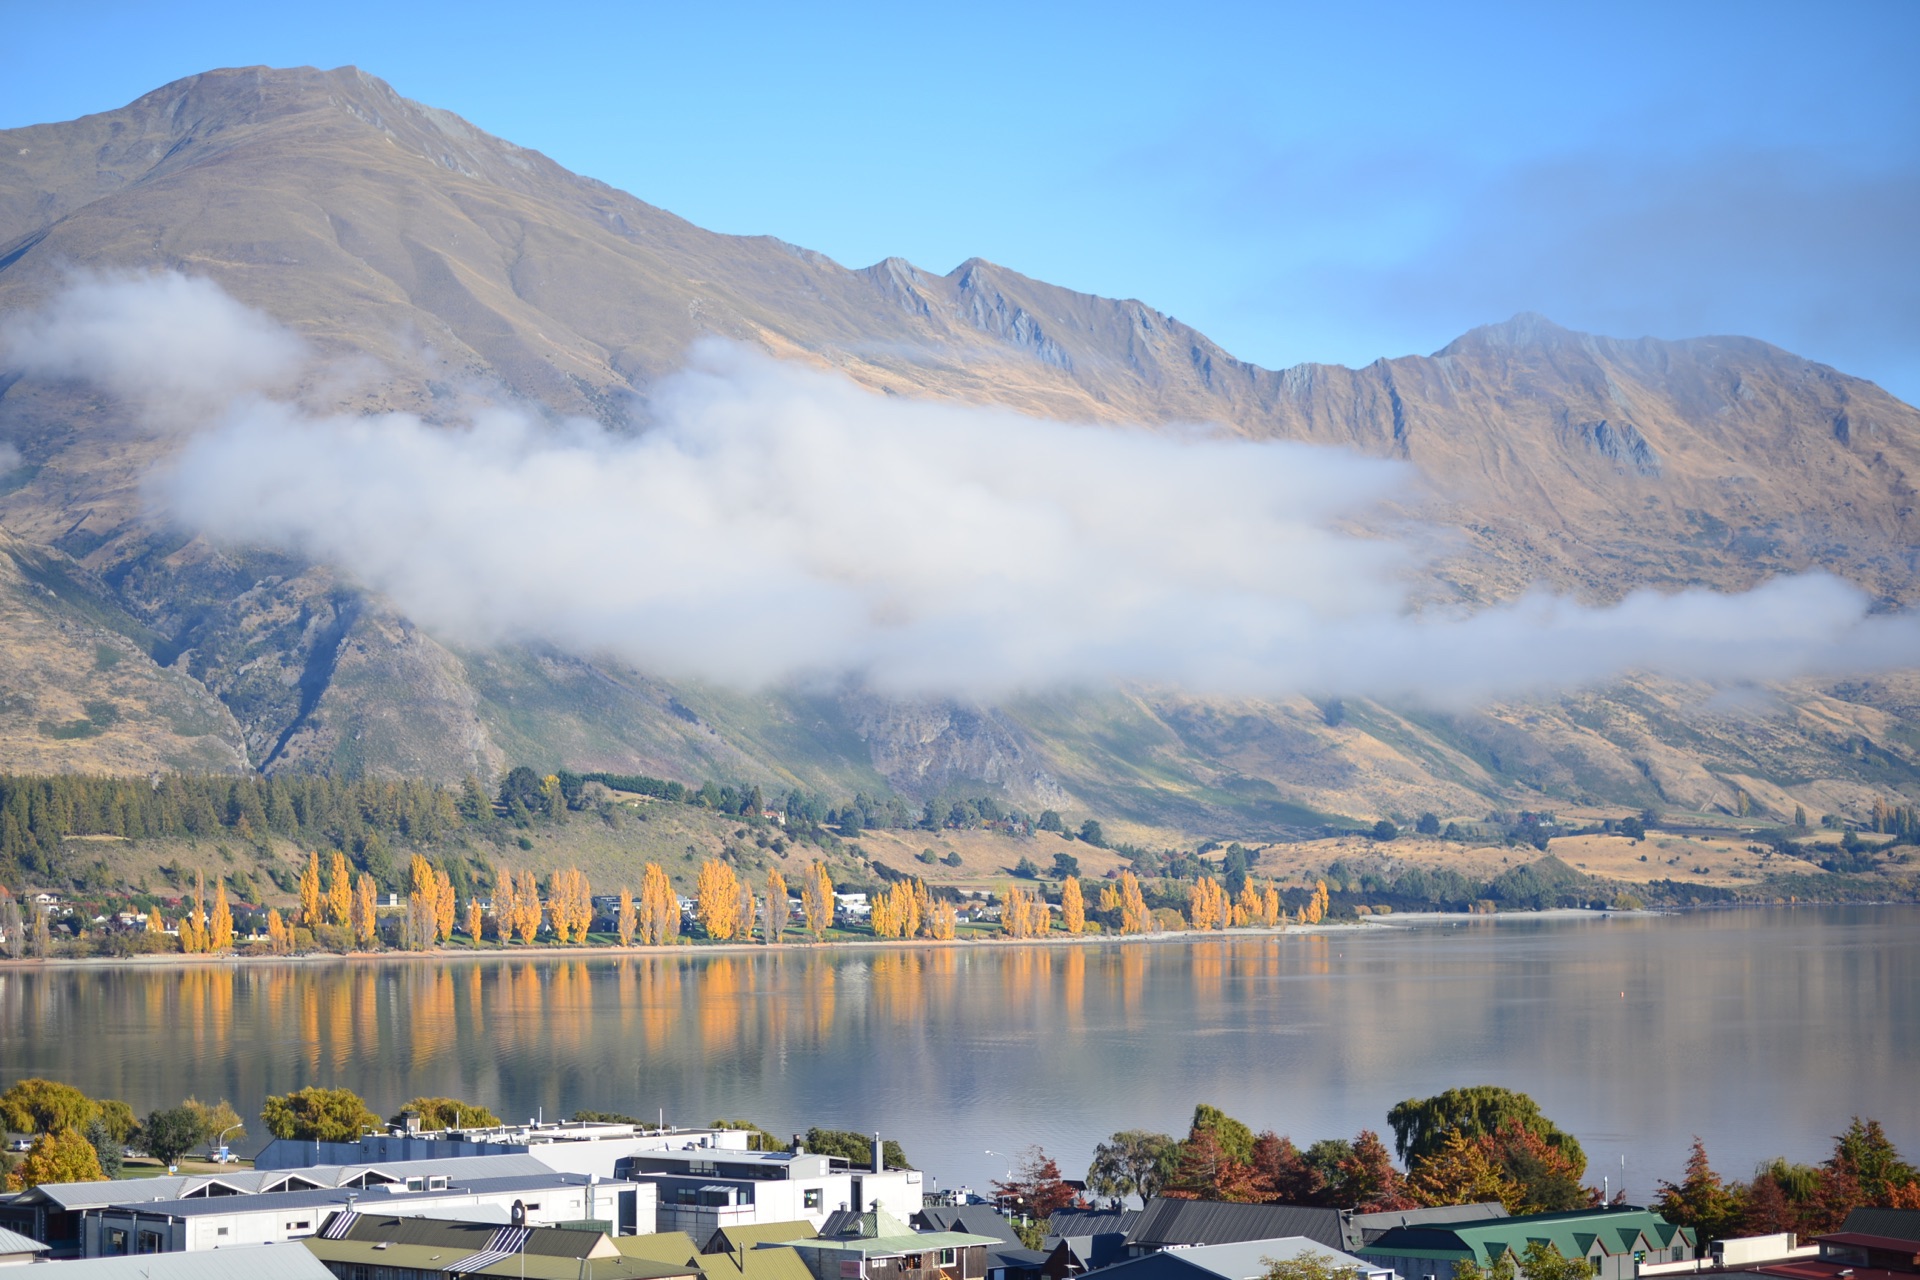 【携程攻略】内克半岛瓦纳卡湖景点,瓦纳卡湖是新西兰最美丽的湖泊之一，清澈的湖水也是航海者和喷射快艇…